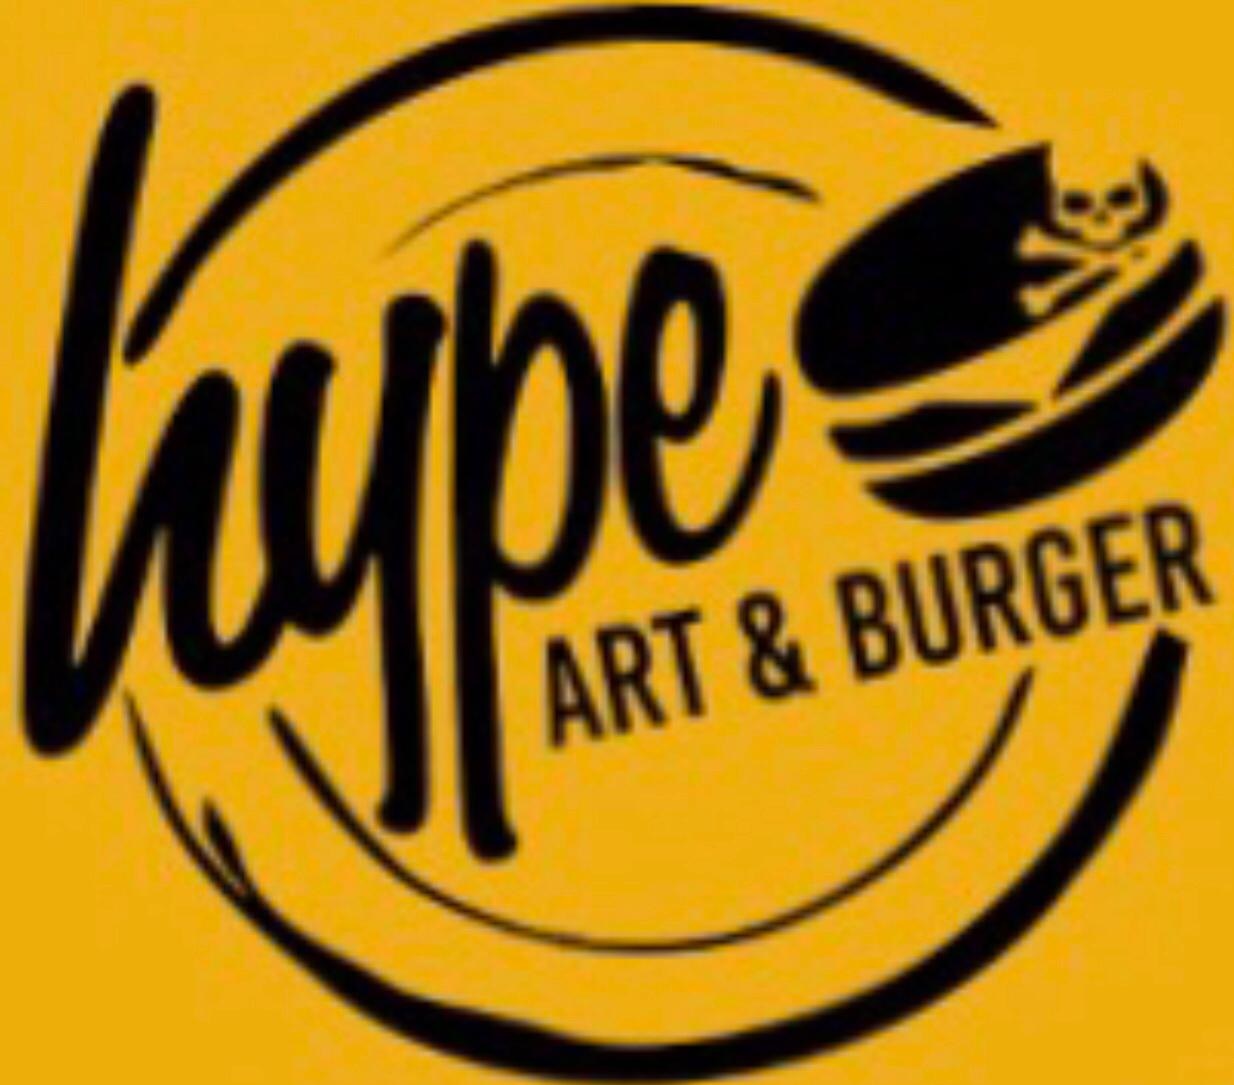 Hype Art & Burger